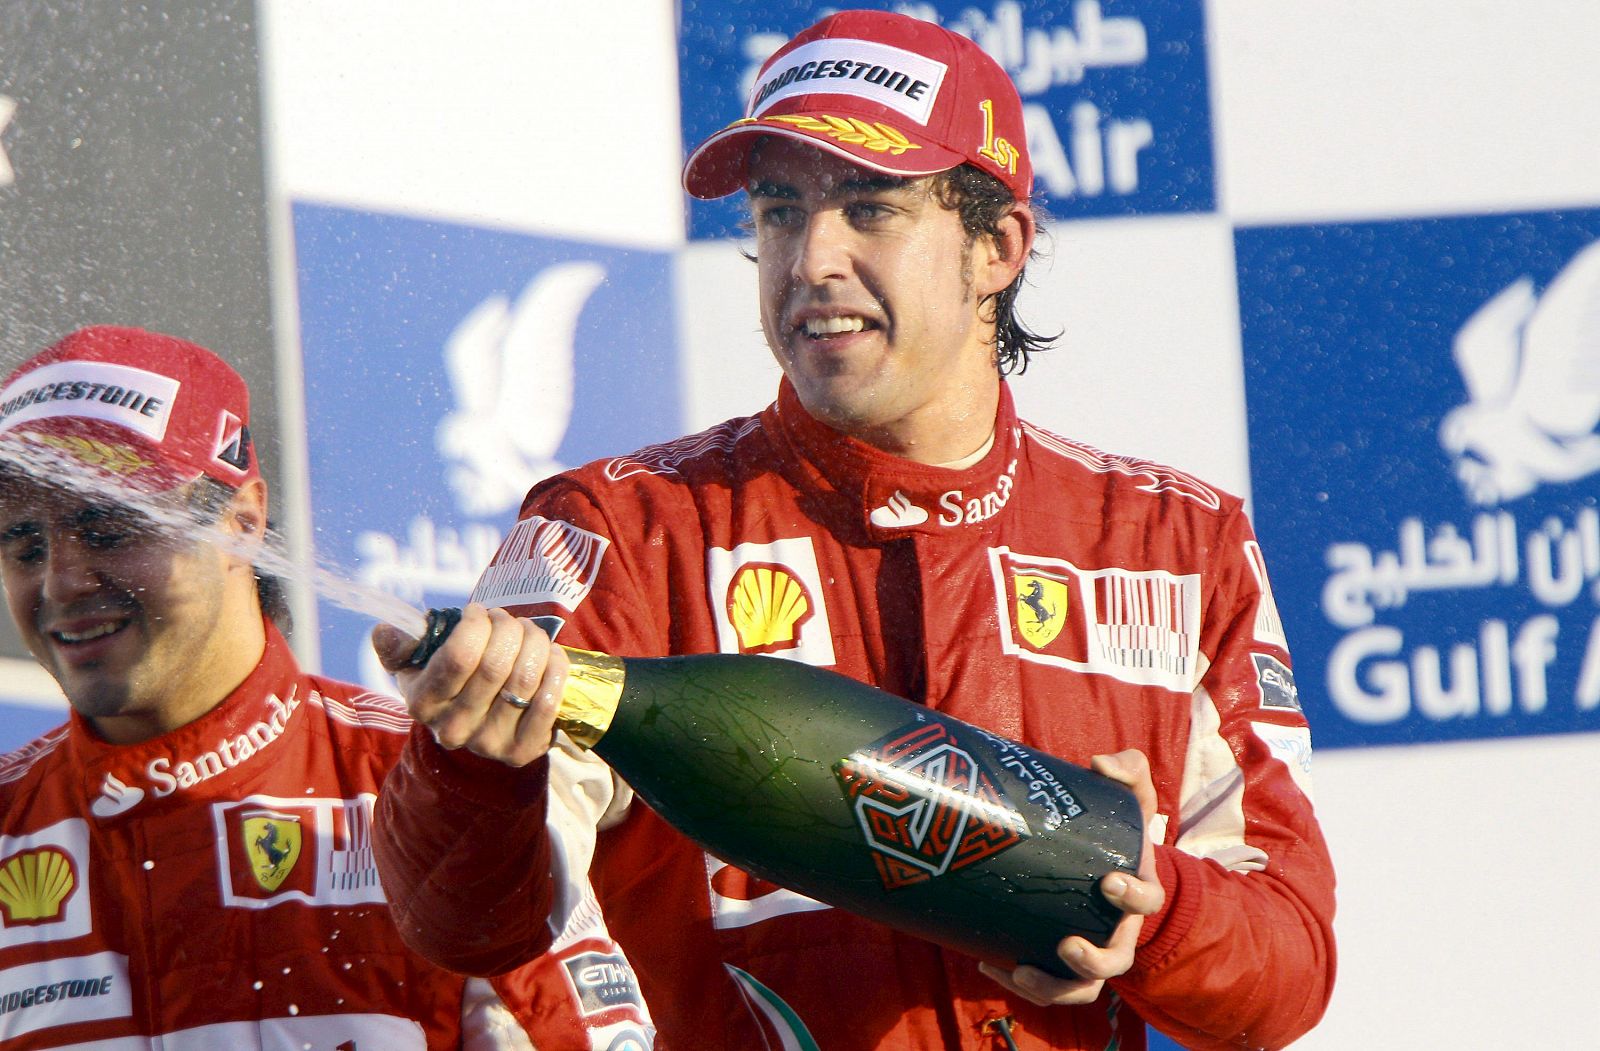 El piloto español de la escudería Ferrari, Fernando Alonso